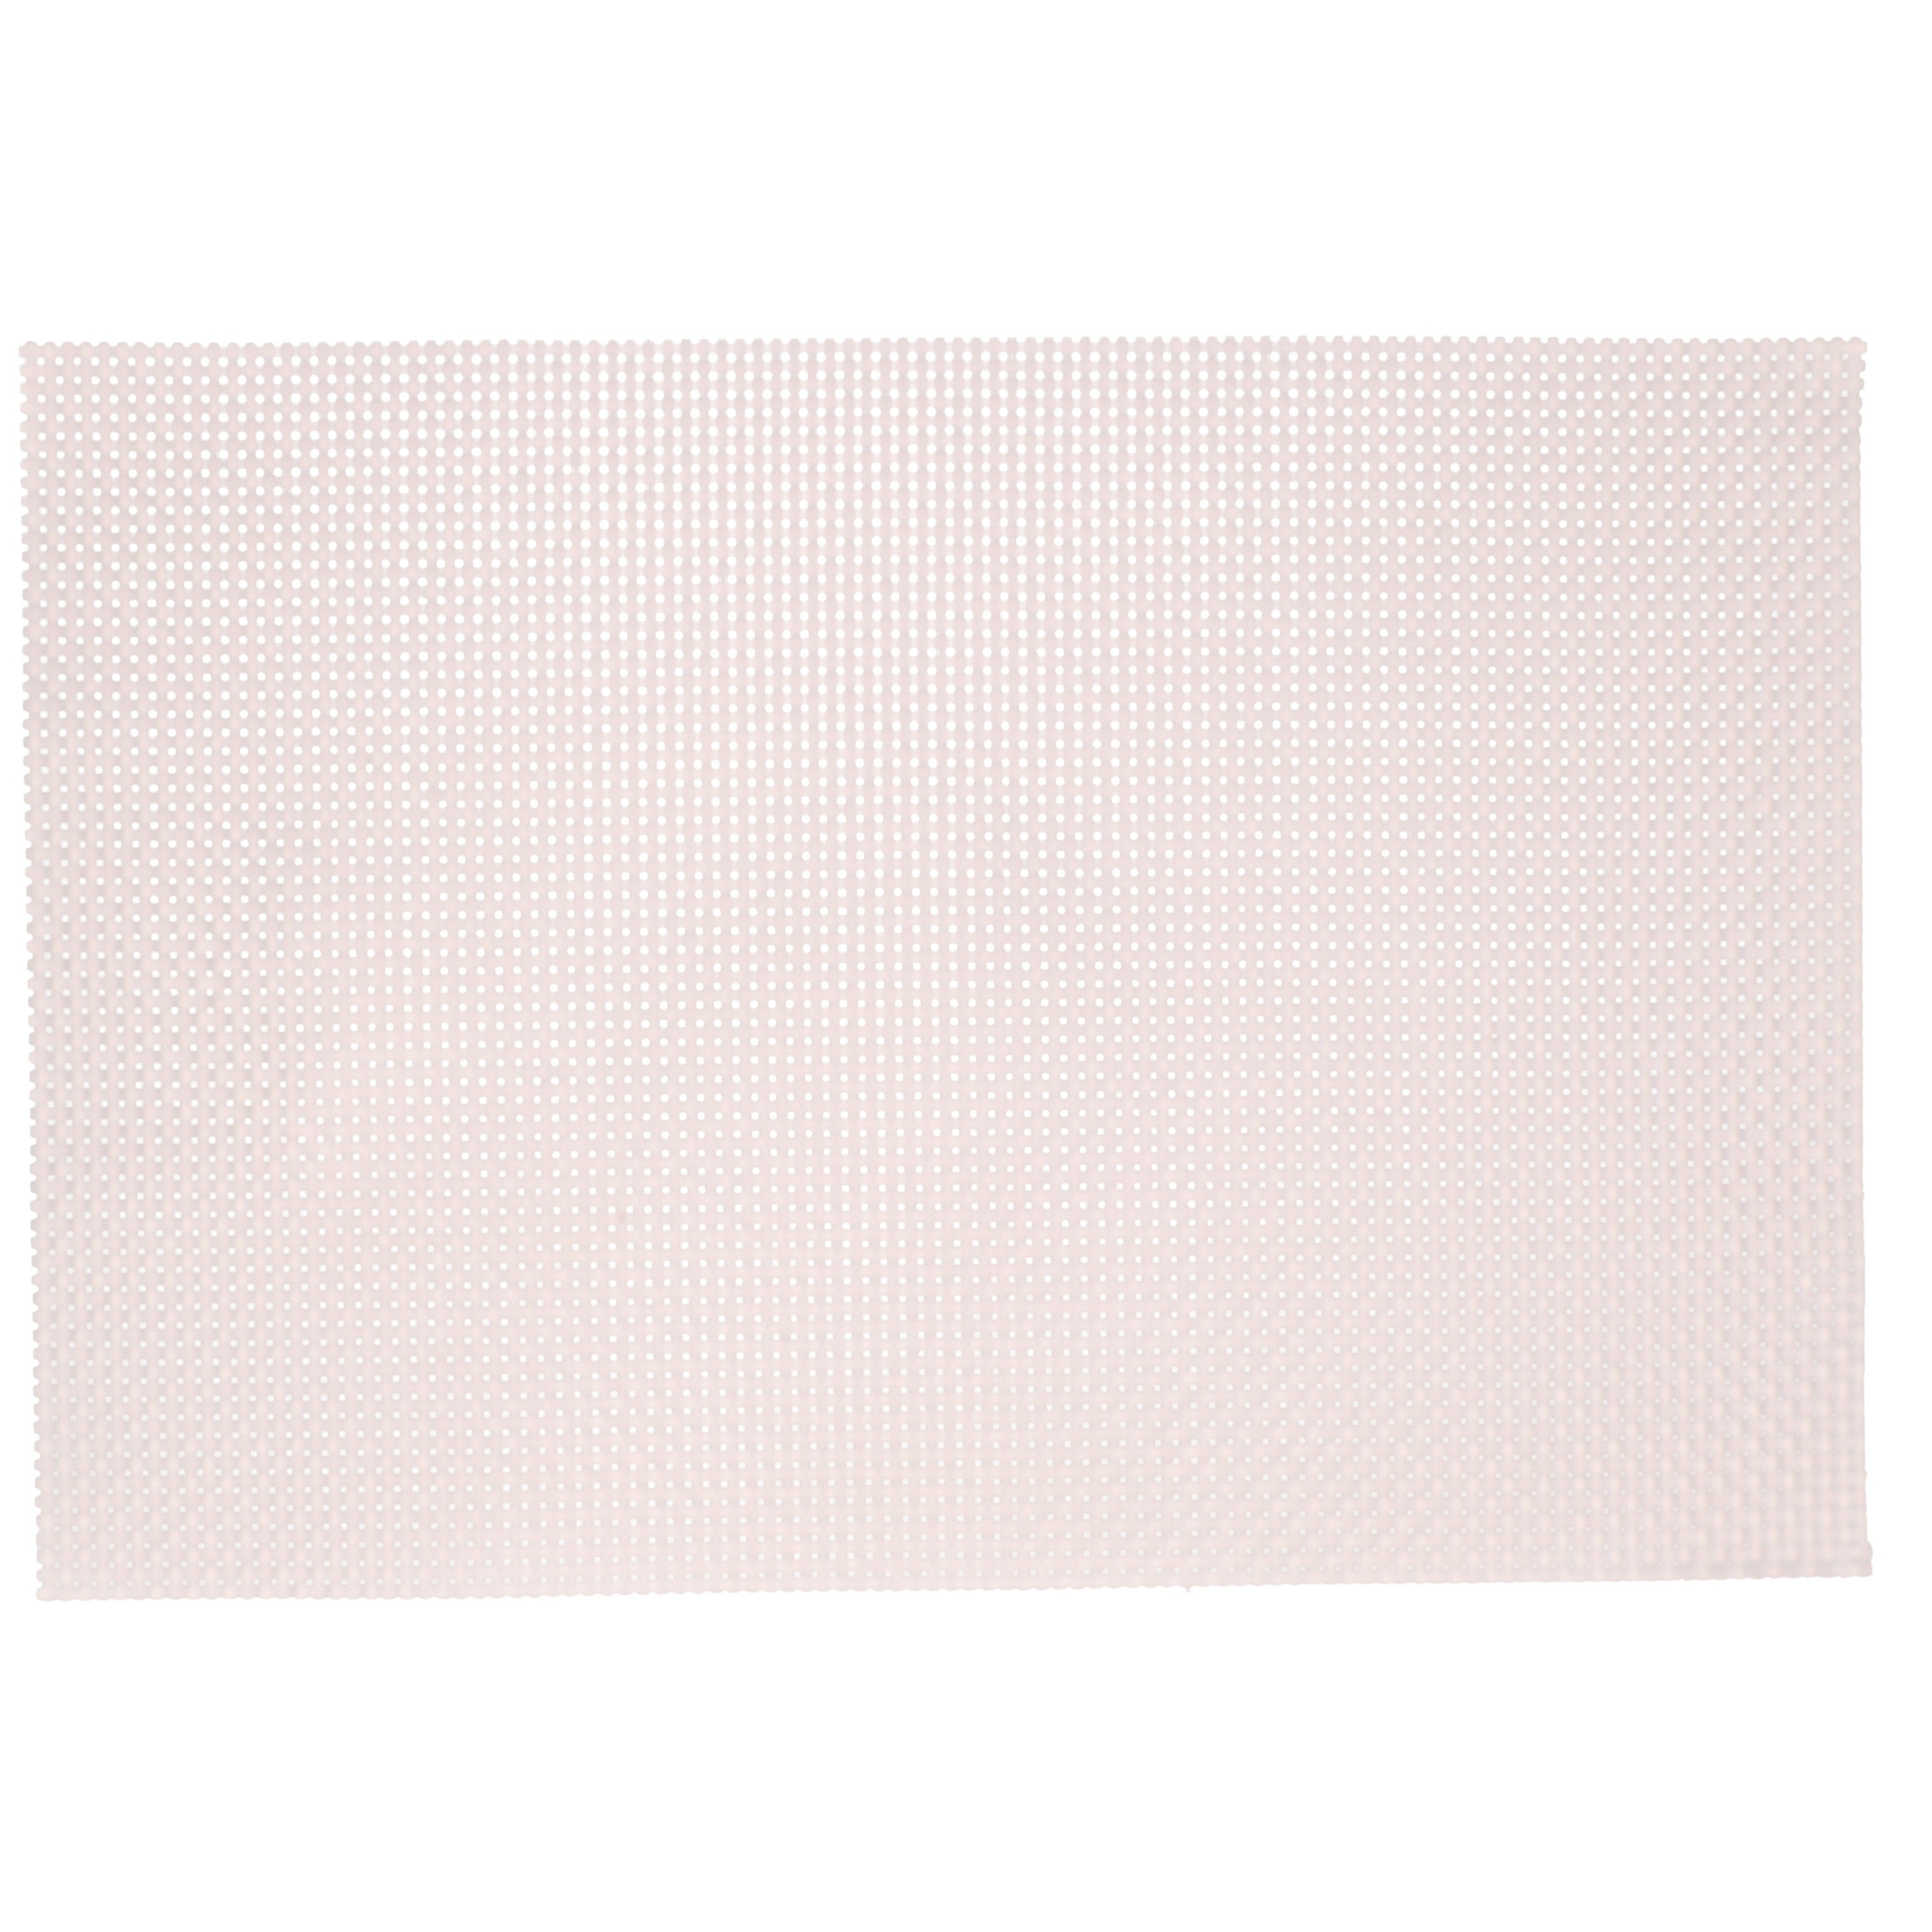 Kesper 10x Rechthoekige placemats lichtroze parelmoer glans geweven 29 x 43 cm -